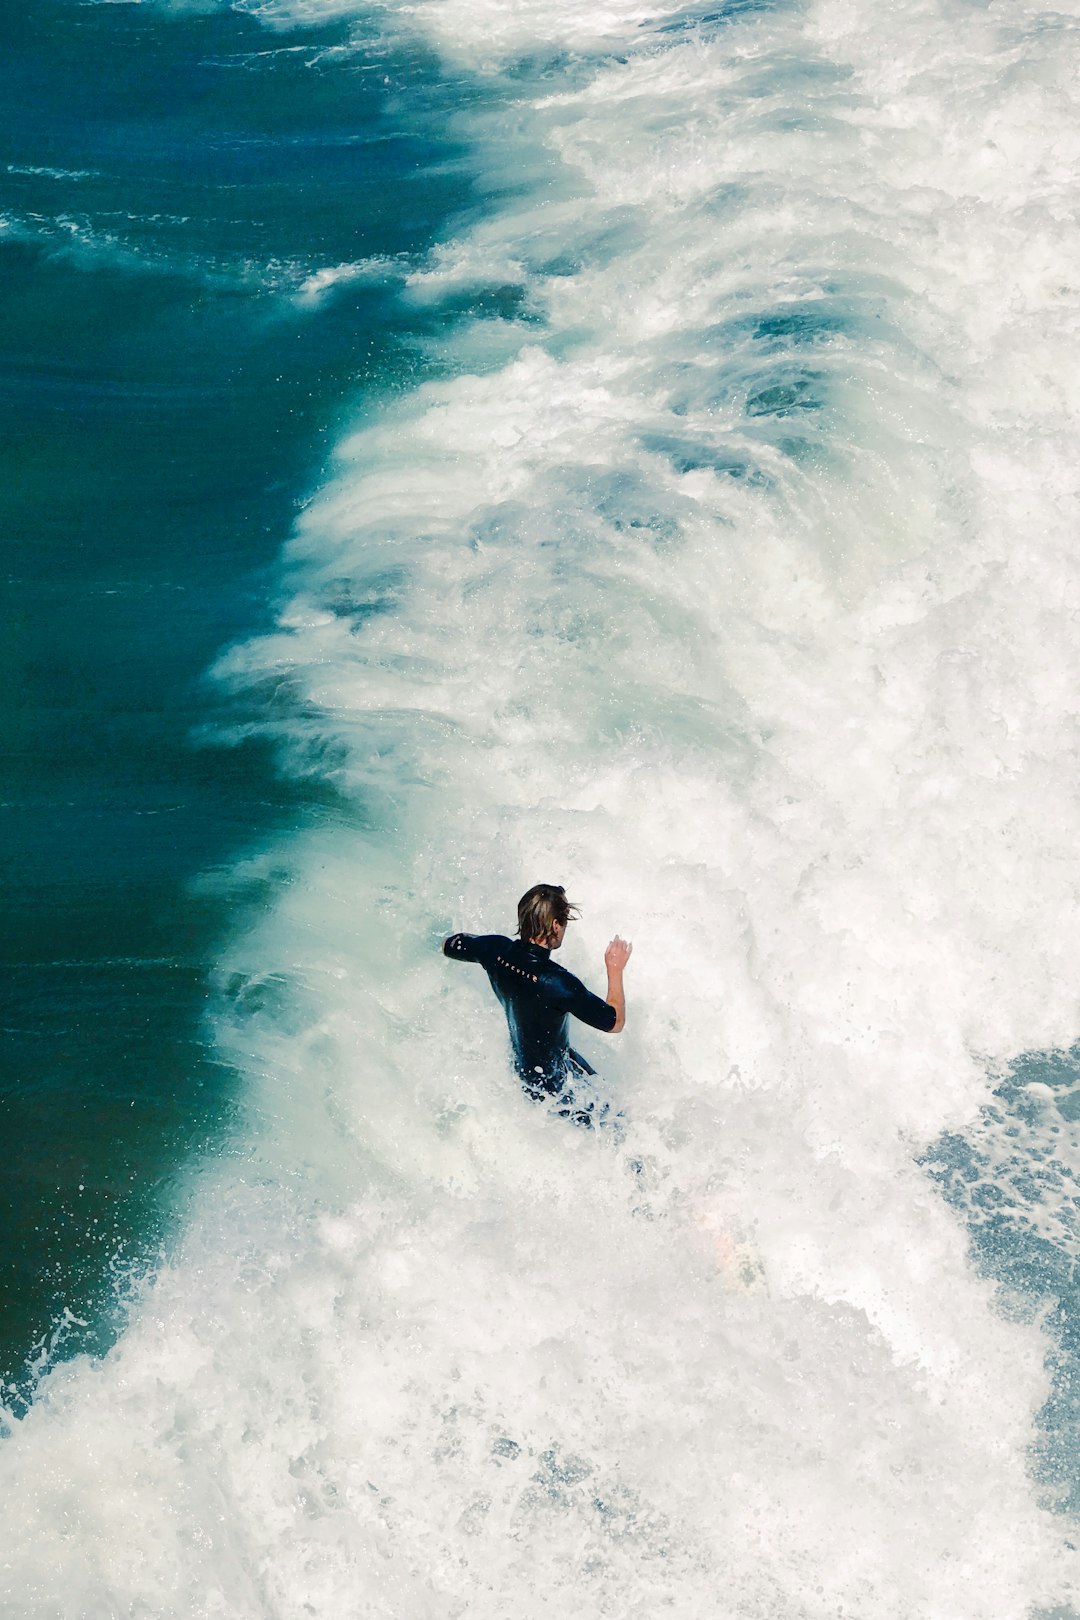 Surfing photo spot 4500 Ocean Blvd Carlsbad